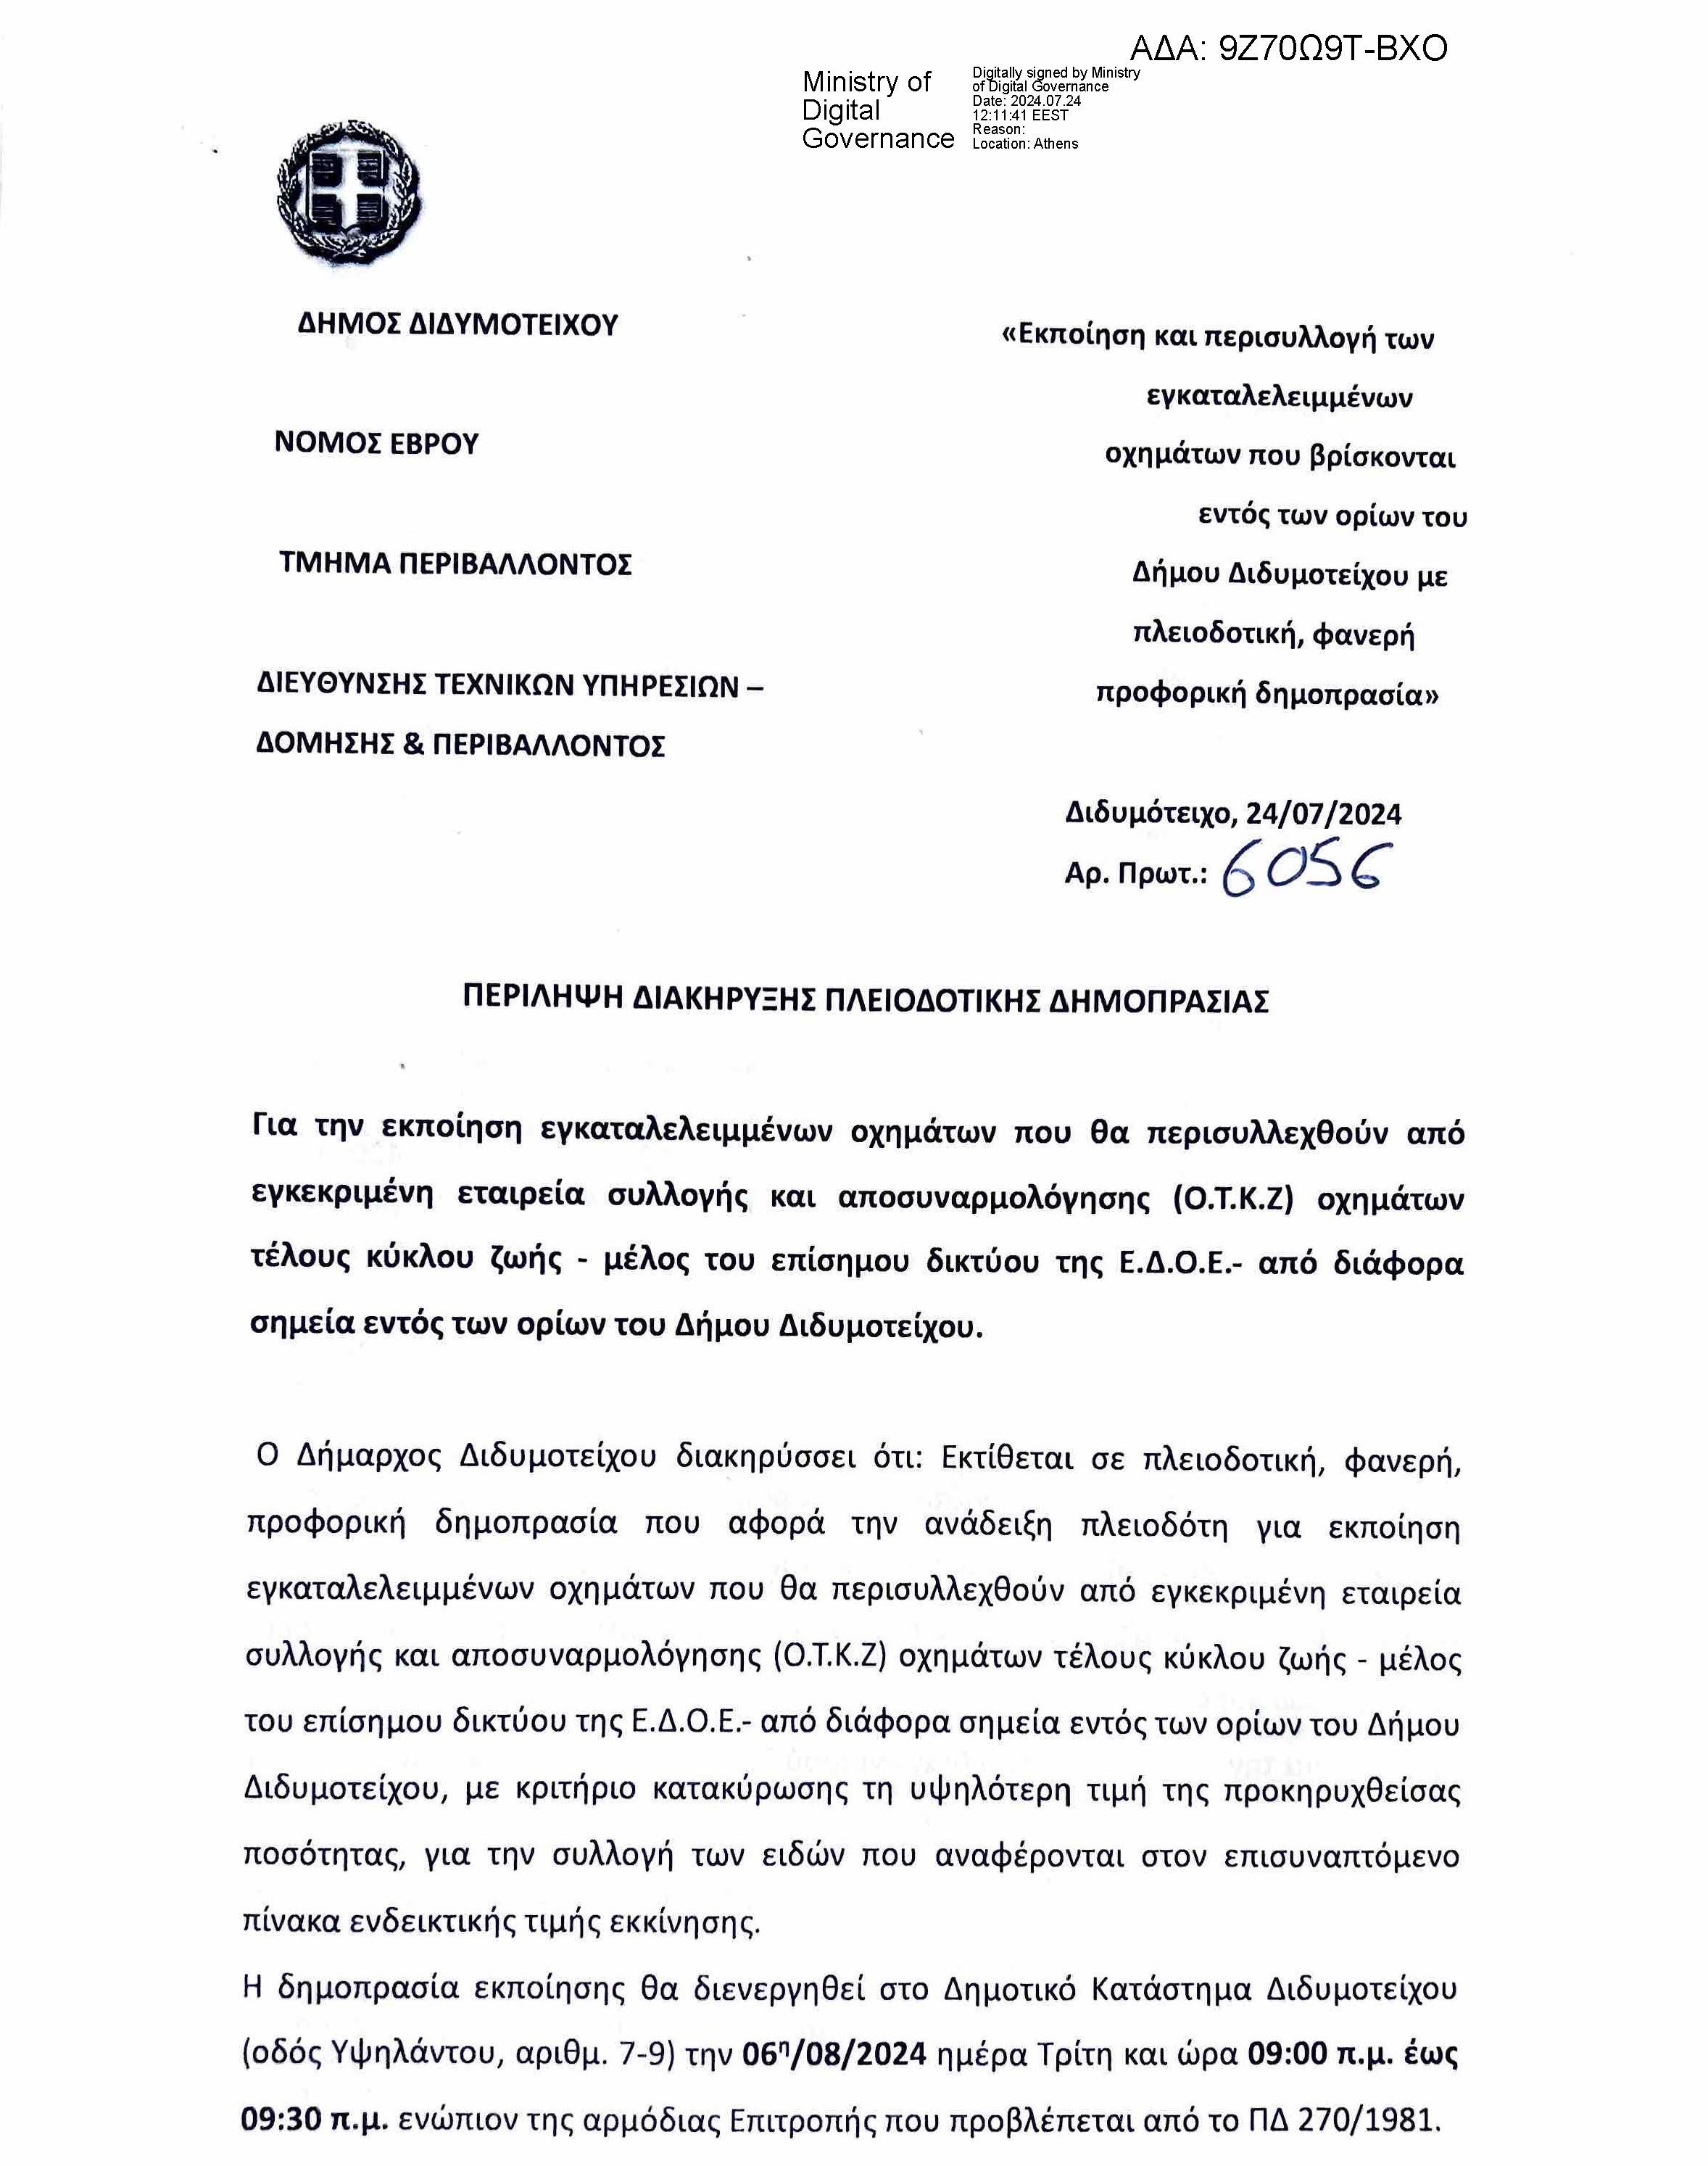 Διακήρυξη πλειοδοτικής δημοπρασίας για την εκποίηση εγκαταλελειμμένων οχημάτων εντός των ορίων του Δήμου Διδυμοτείχου